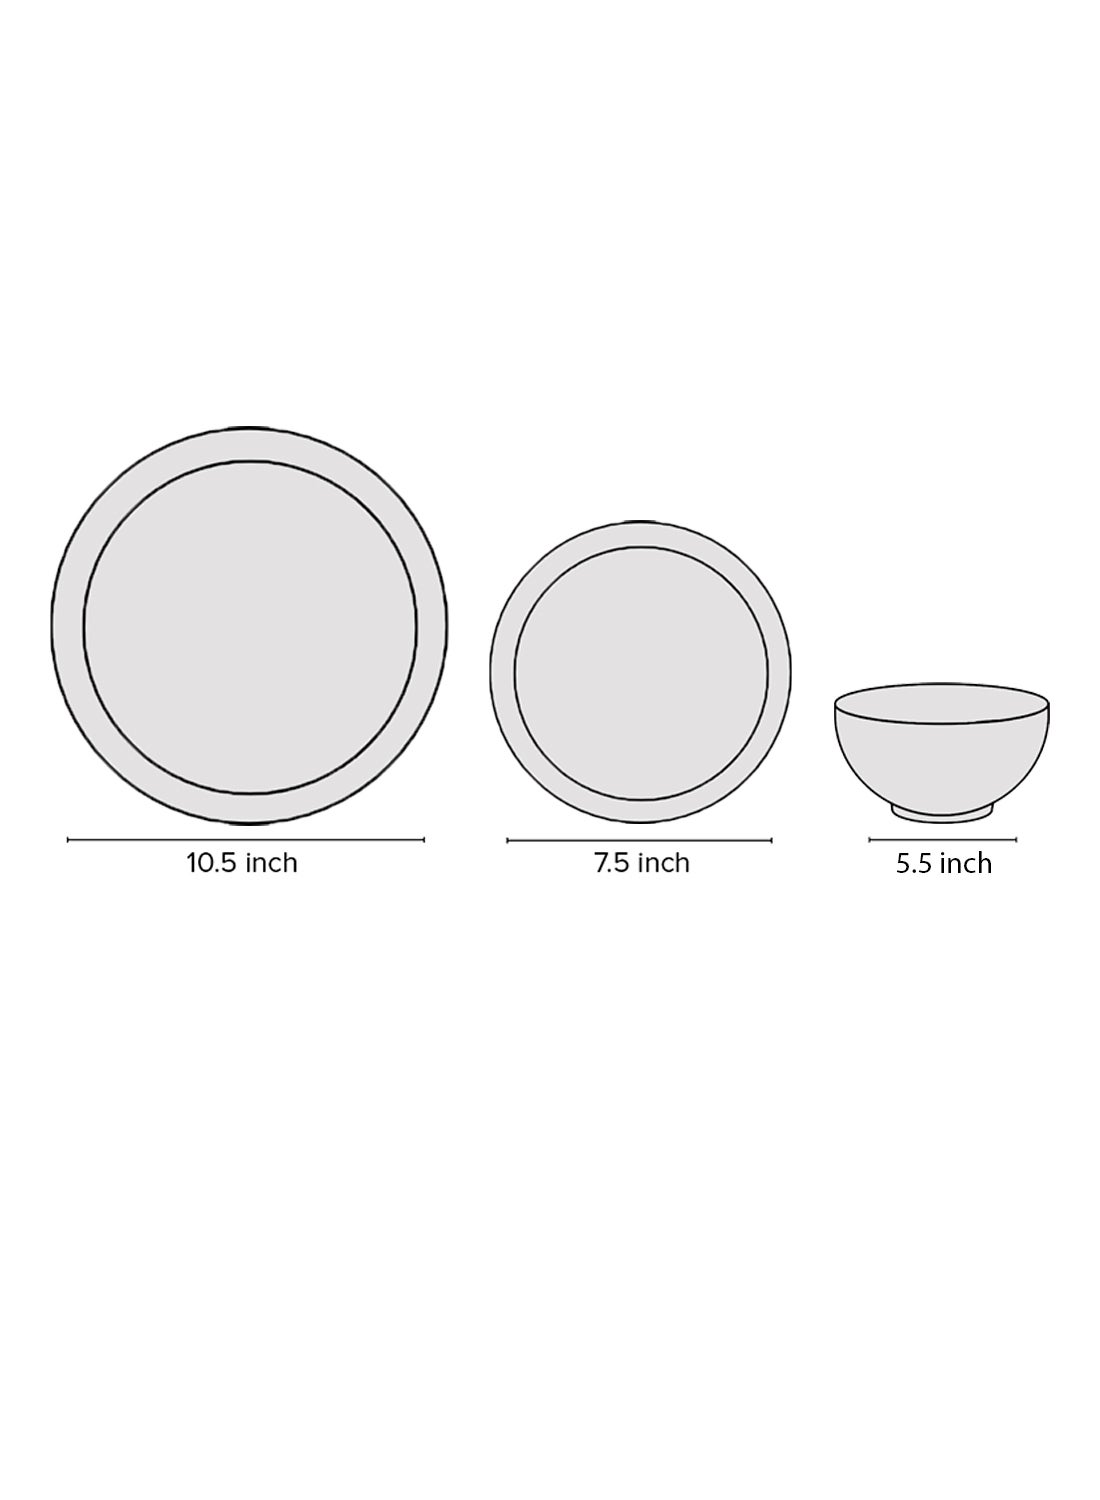 18 Piece Porcelain Dinner Set - Dishes, Plates - Dinner Plate, Side Plate, Bowl - Serves 6 - Festive Design Orion/Gold 